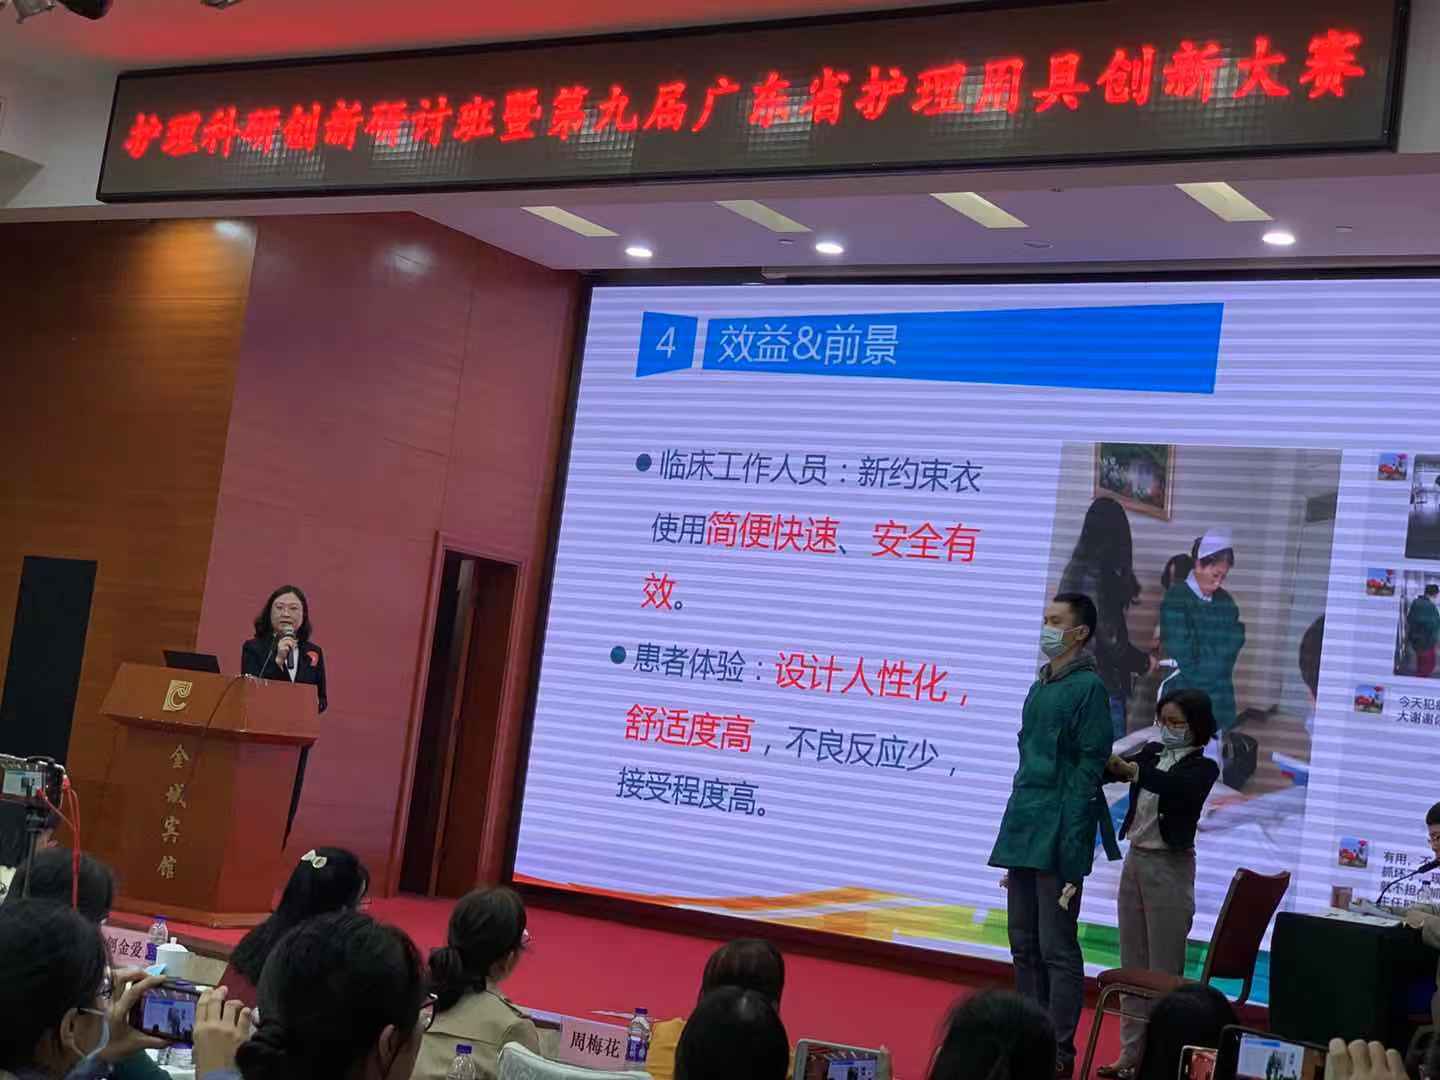 恭喜广州惠爱护理创新团队发明的约束衣荣获二等奖